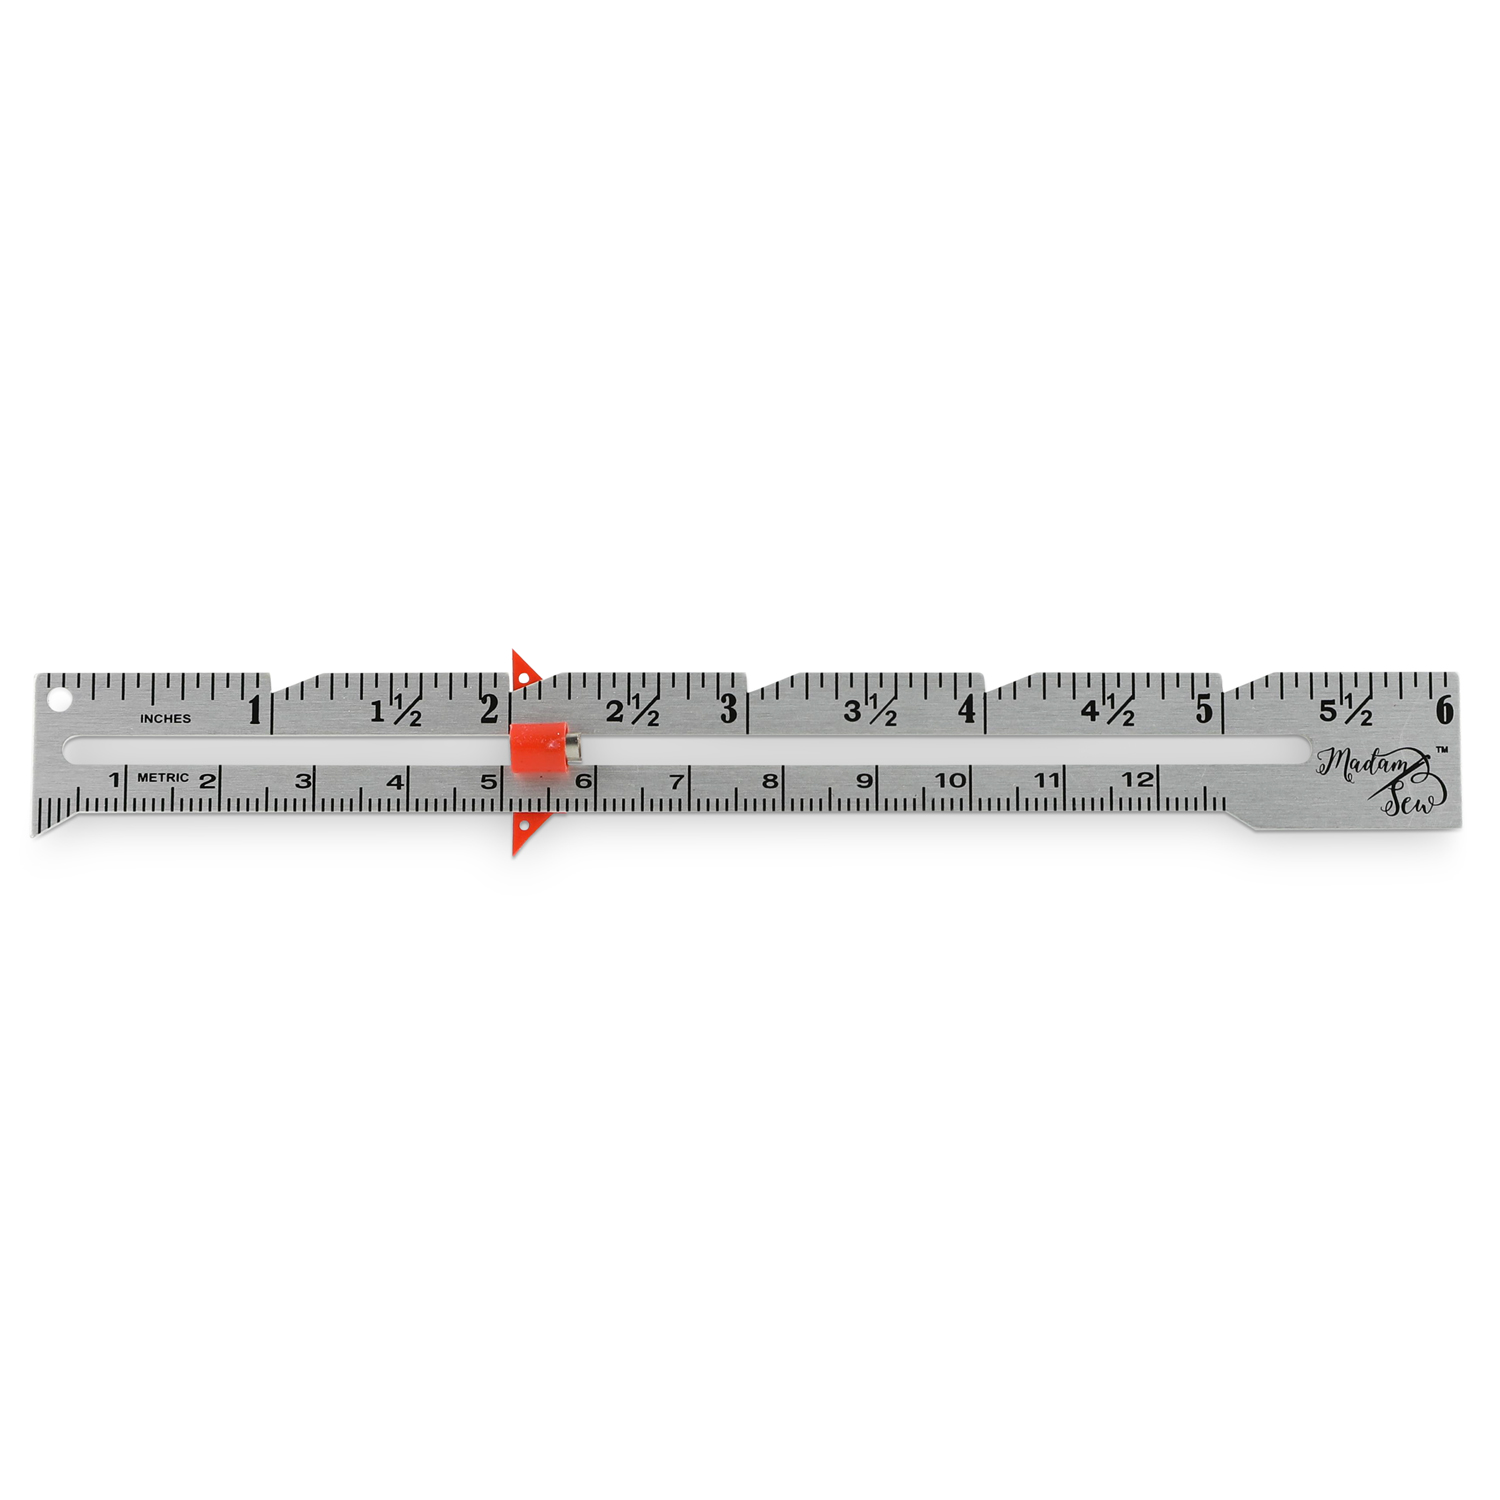 sliding measuring gauge instructions